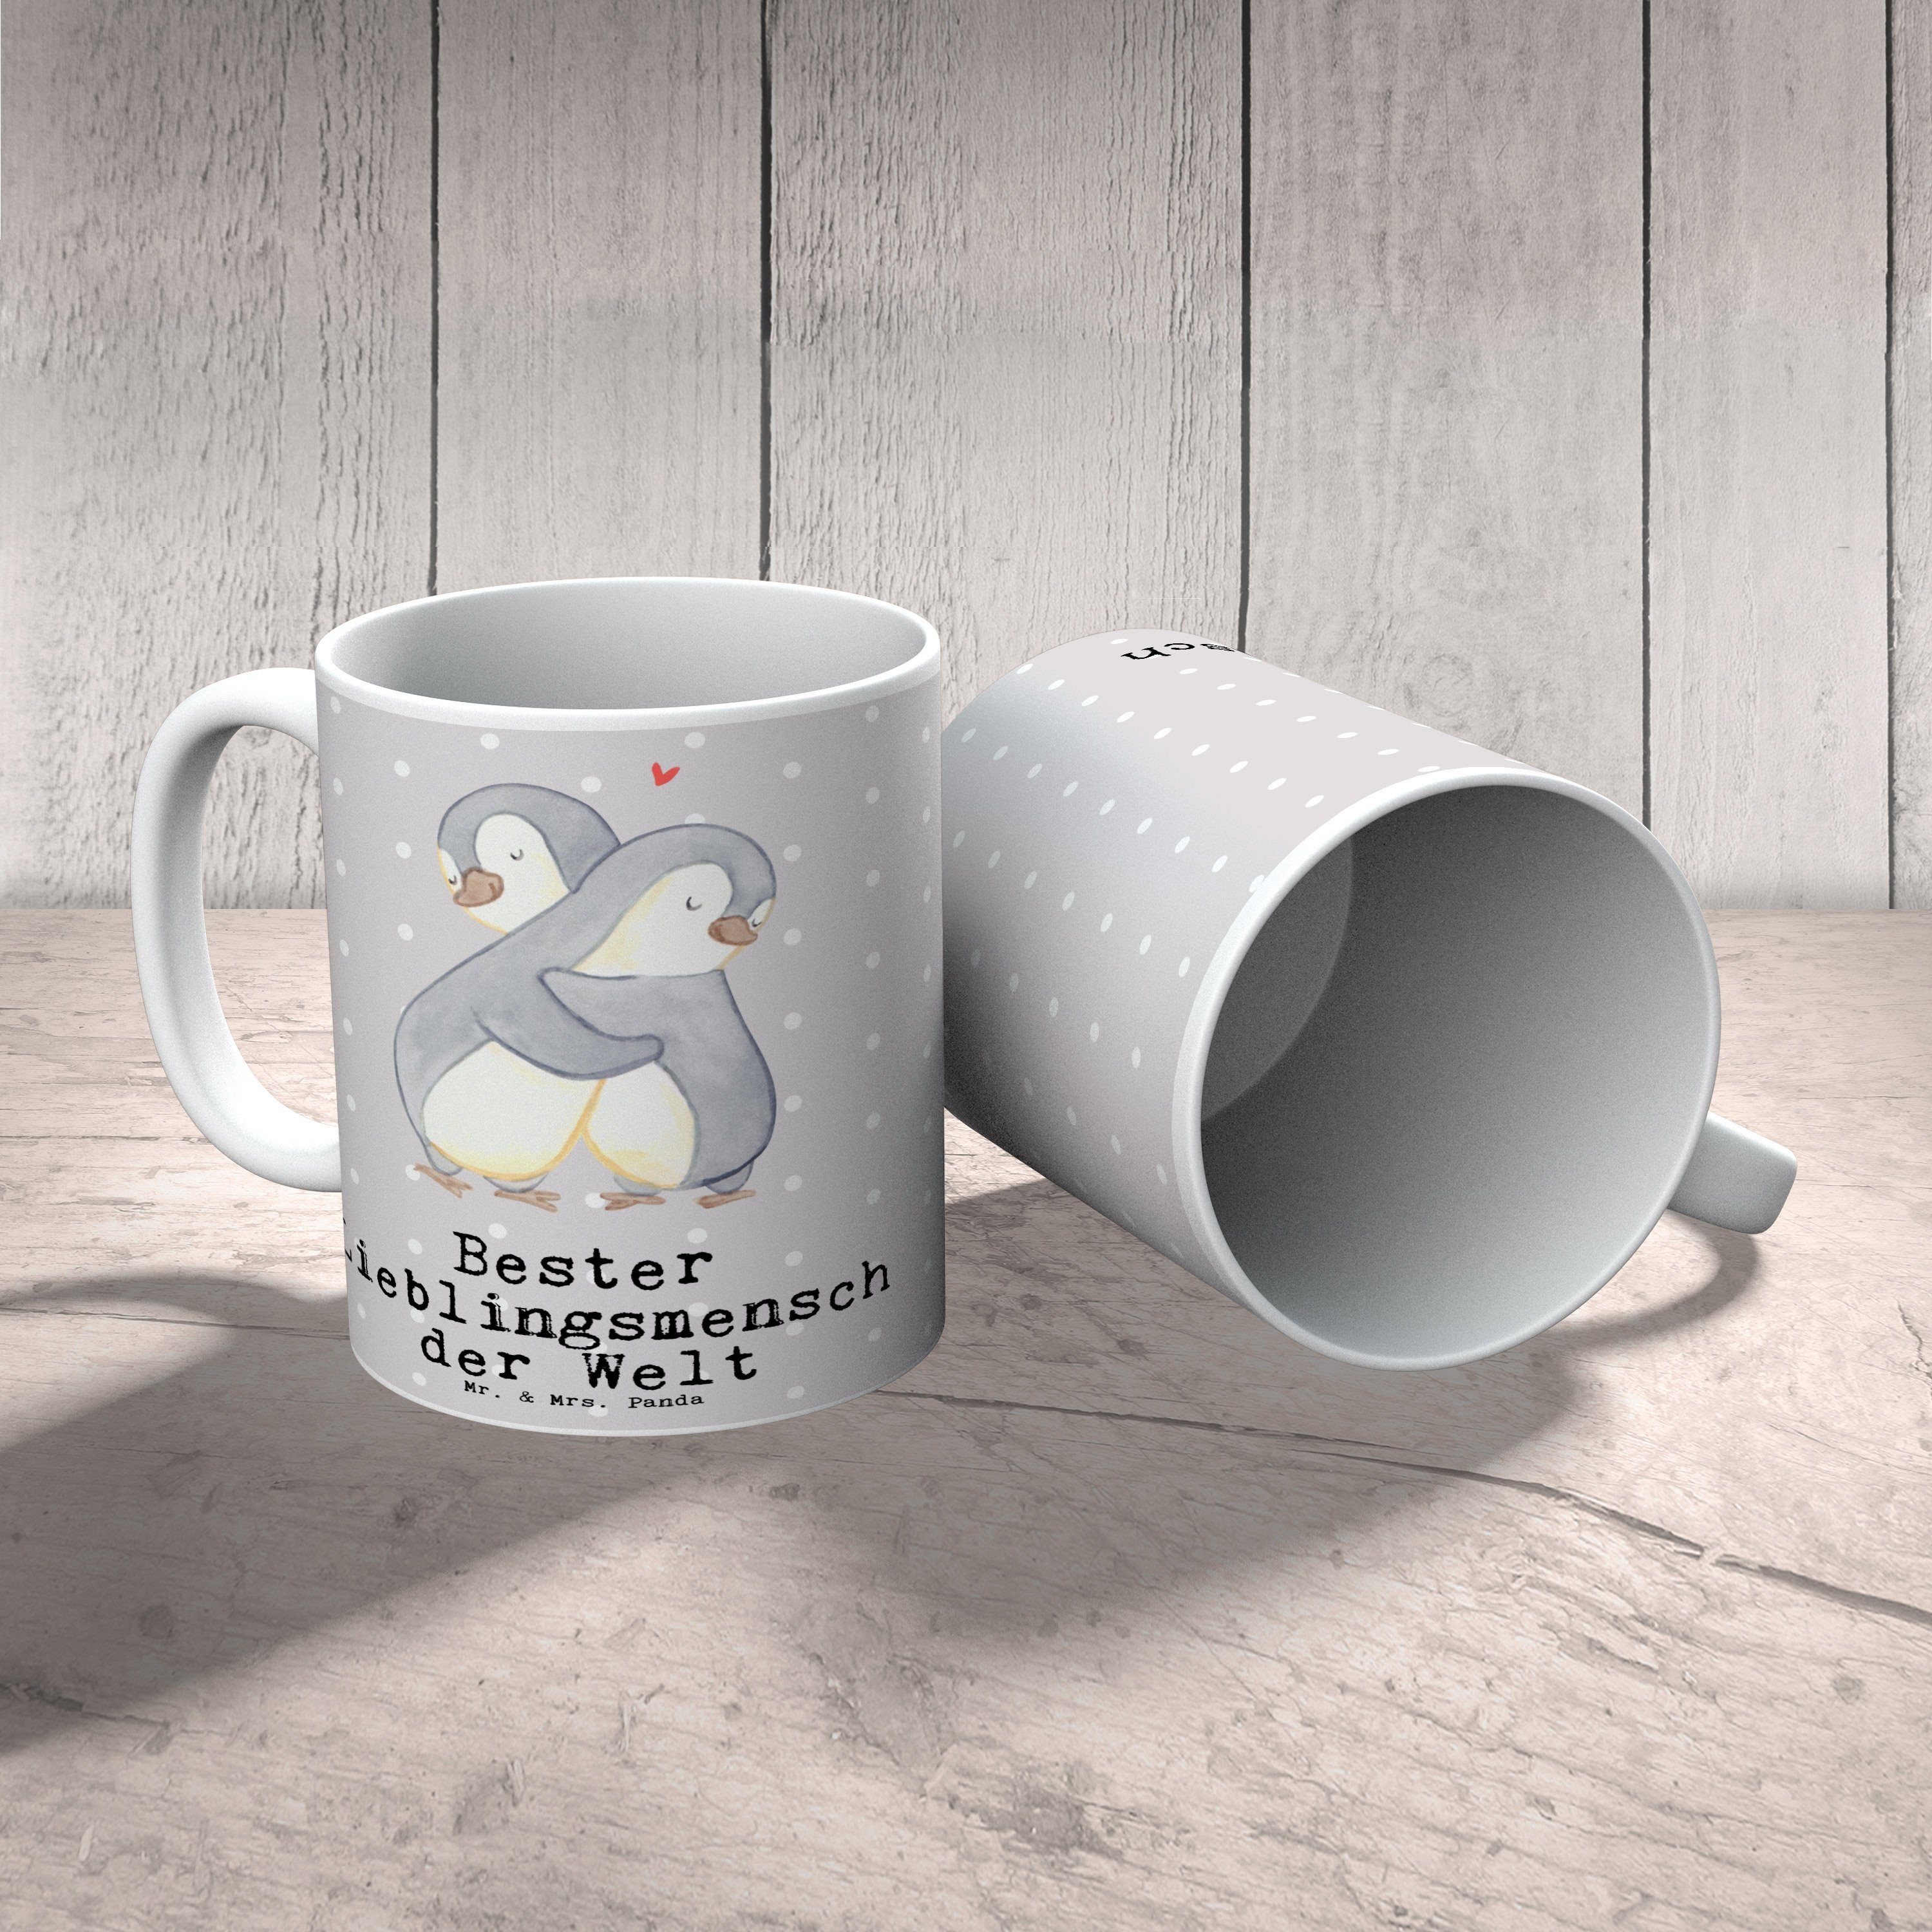 Te, der Welt Geschenk, Mr. - & Mrs. Pastell Grau Keramik - Pinguin Lieblingsmensch Tasse Bester Panda